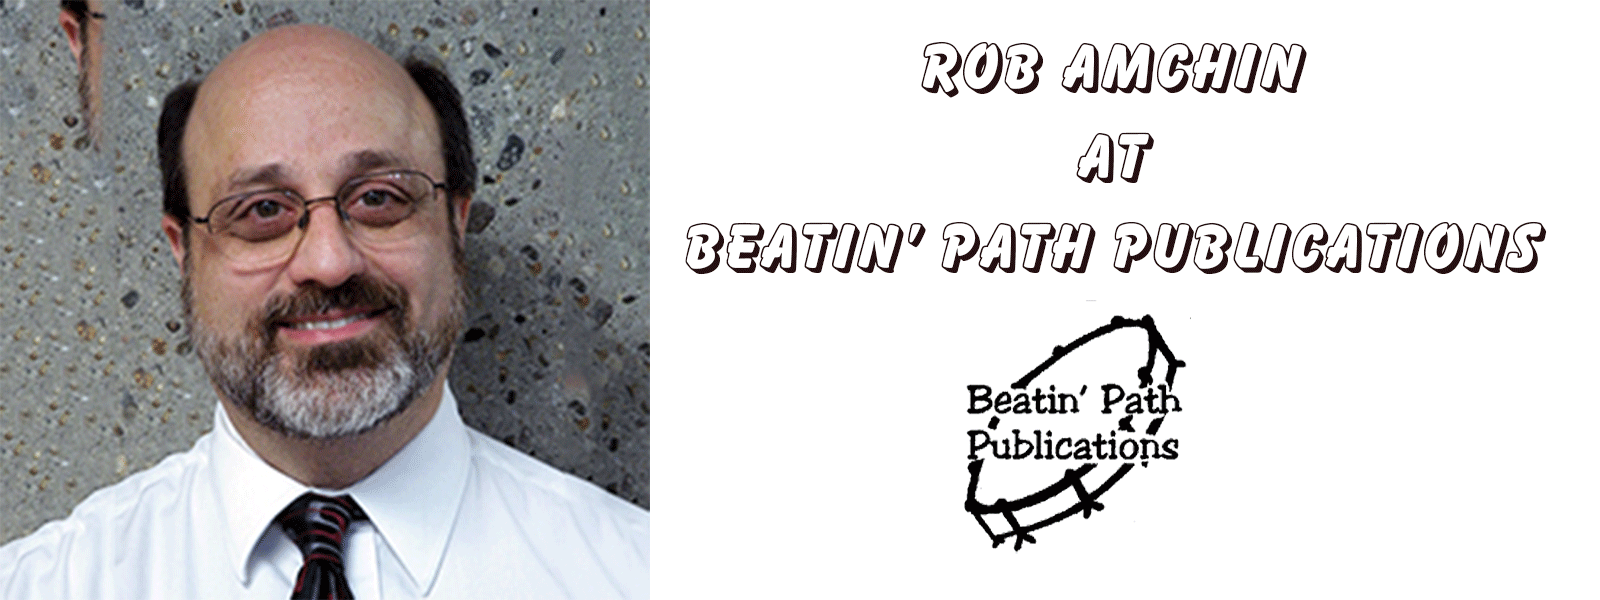 Robert A. Amchin at Beatin' Path Publications